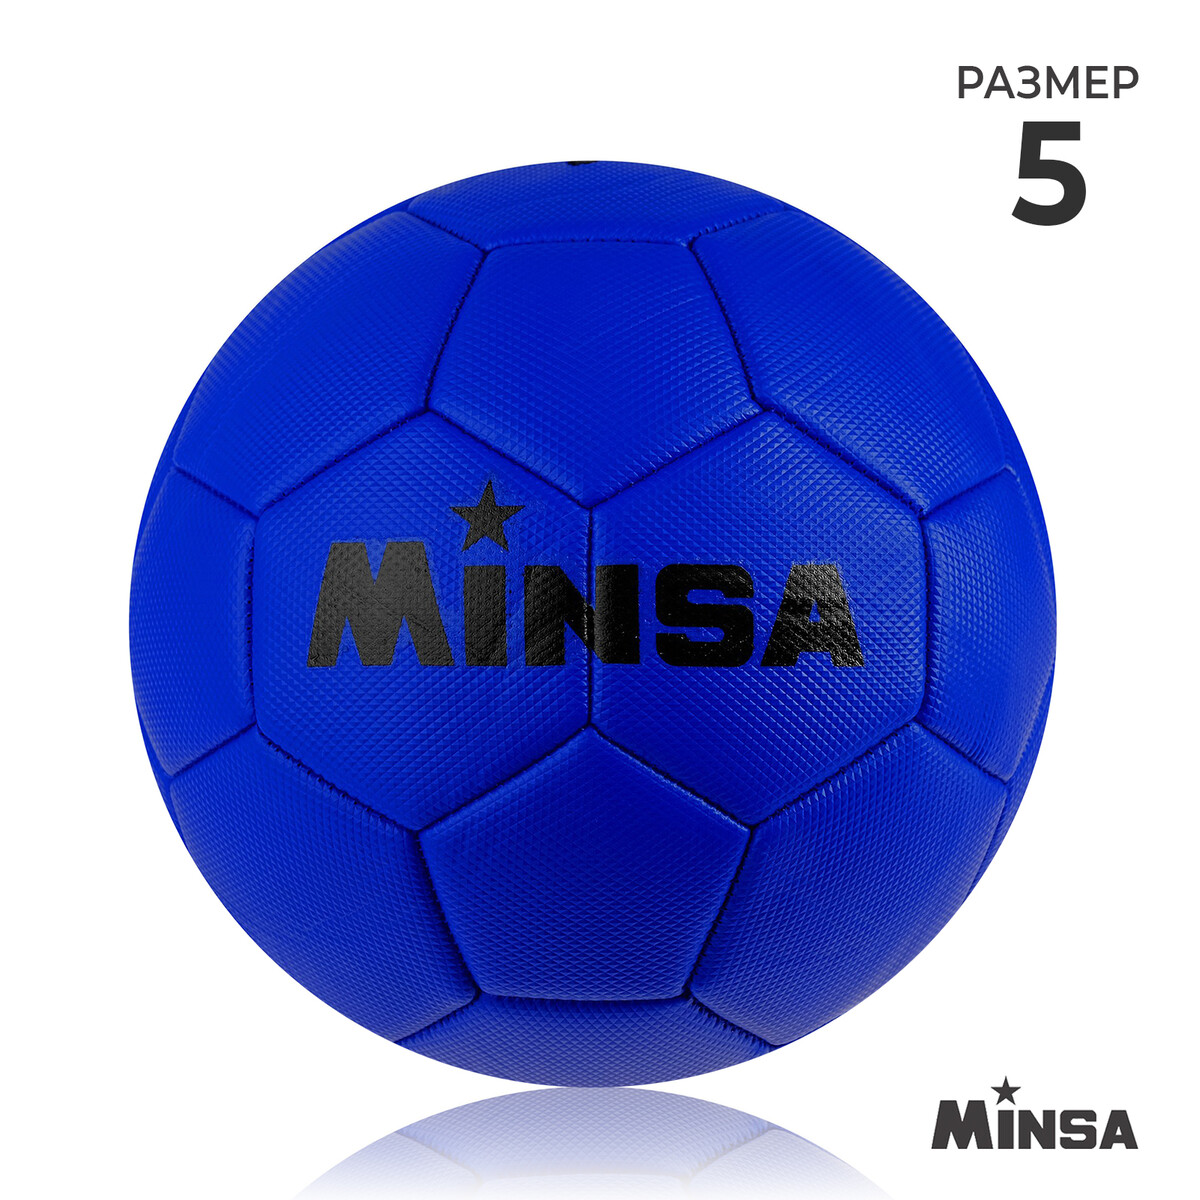 Мяч футбольный minsa, пвх, машинная сшивка, 32 панели, р. 5 MINSA